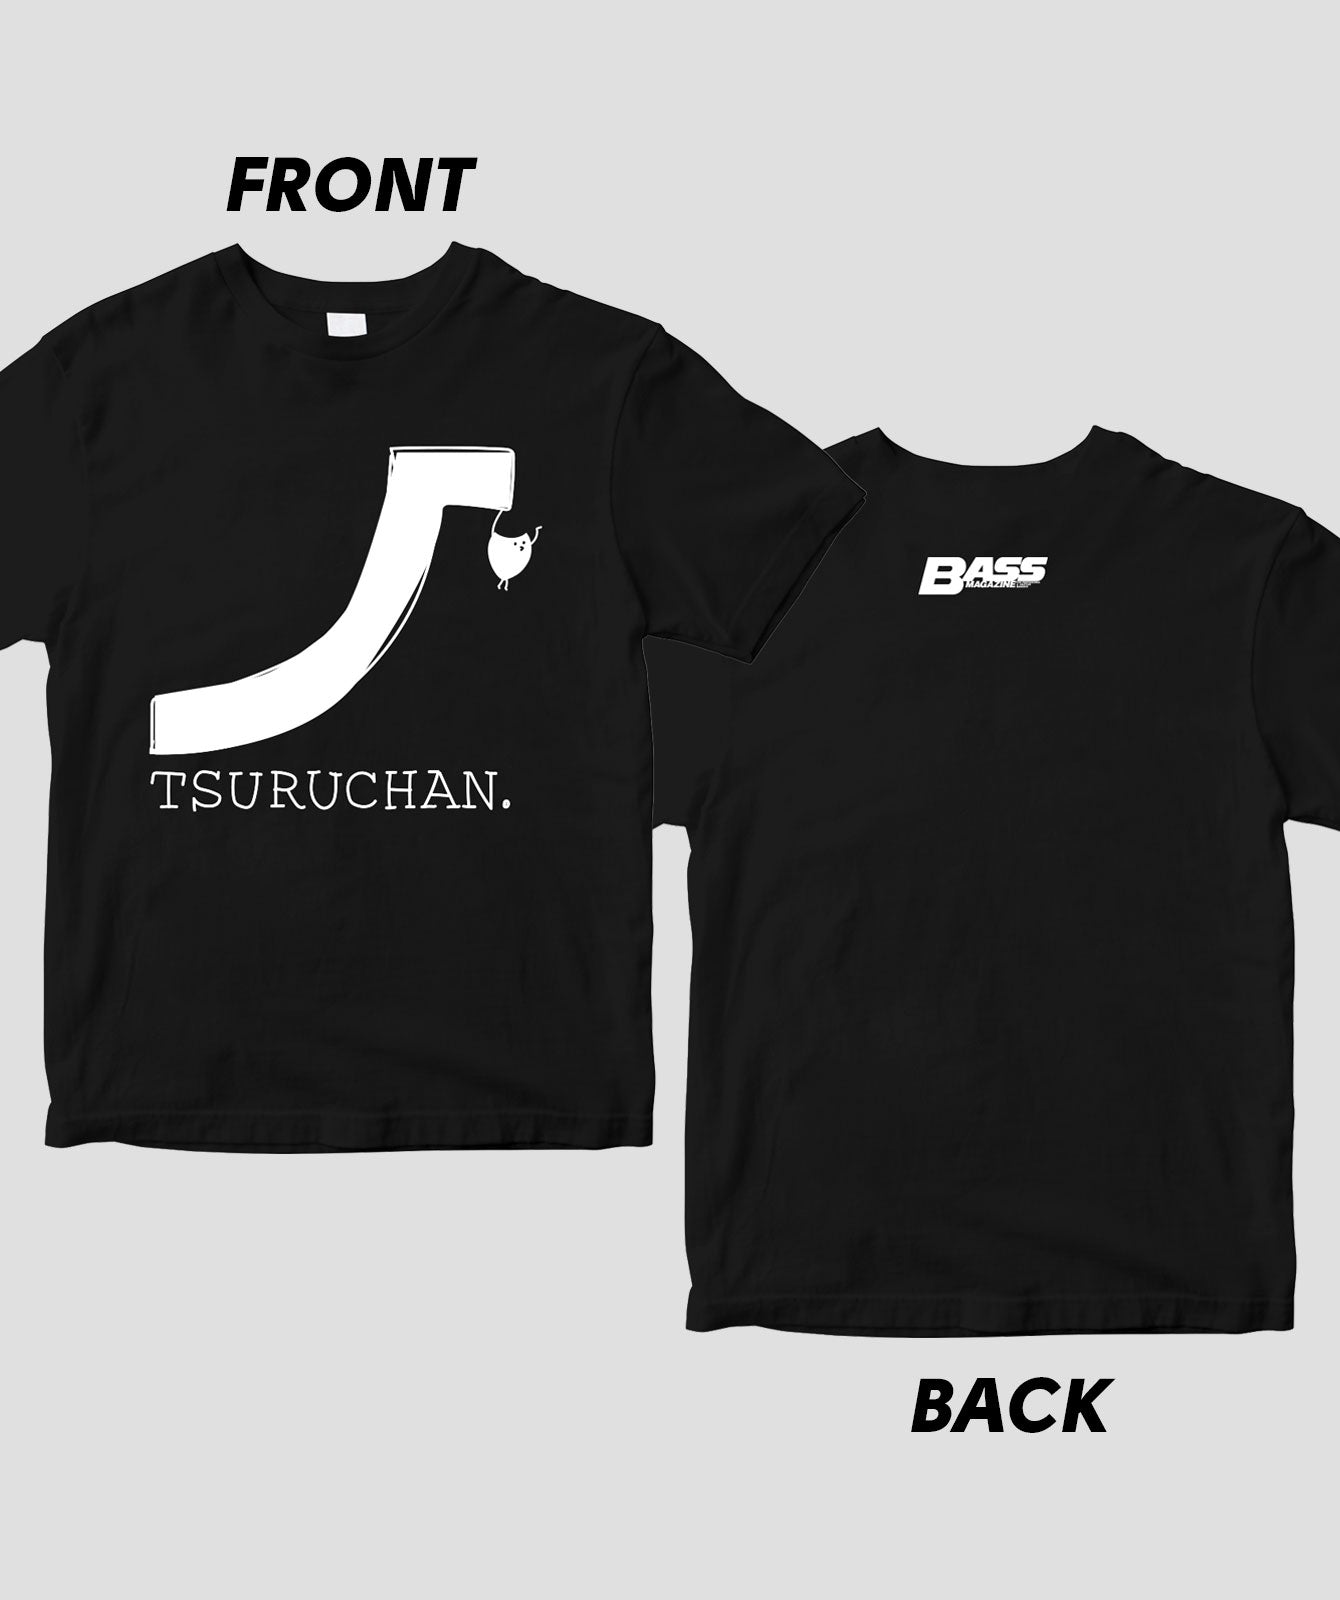 「TSURUCHAN.ブランド」Tシャツ